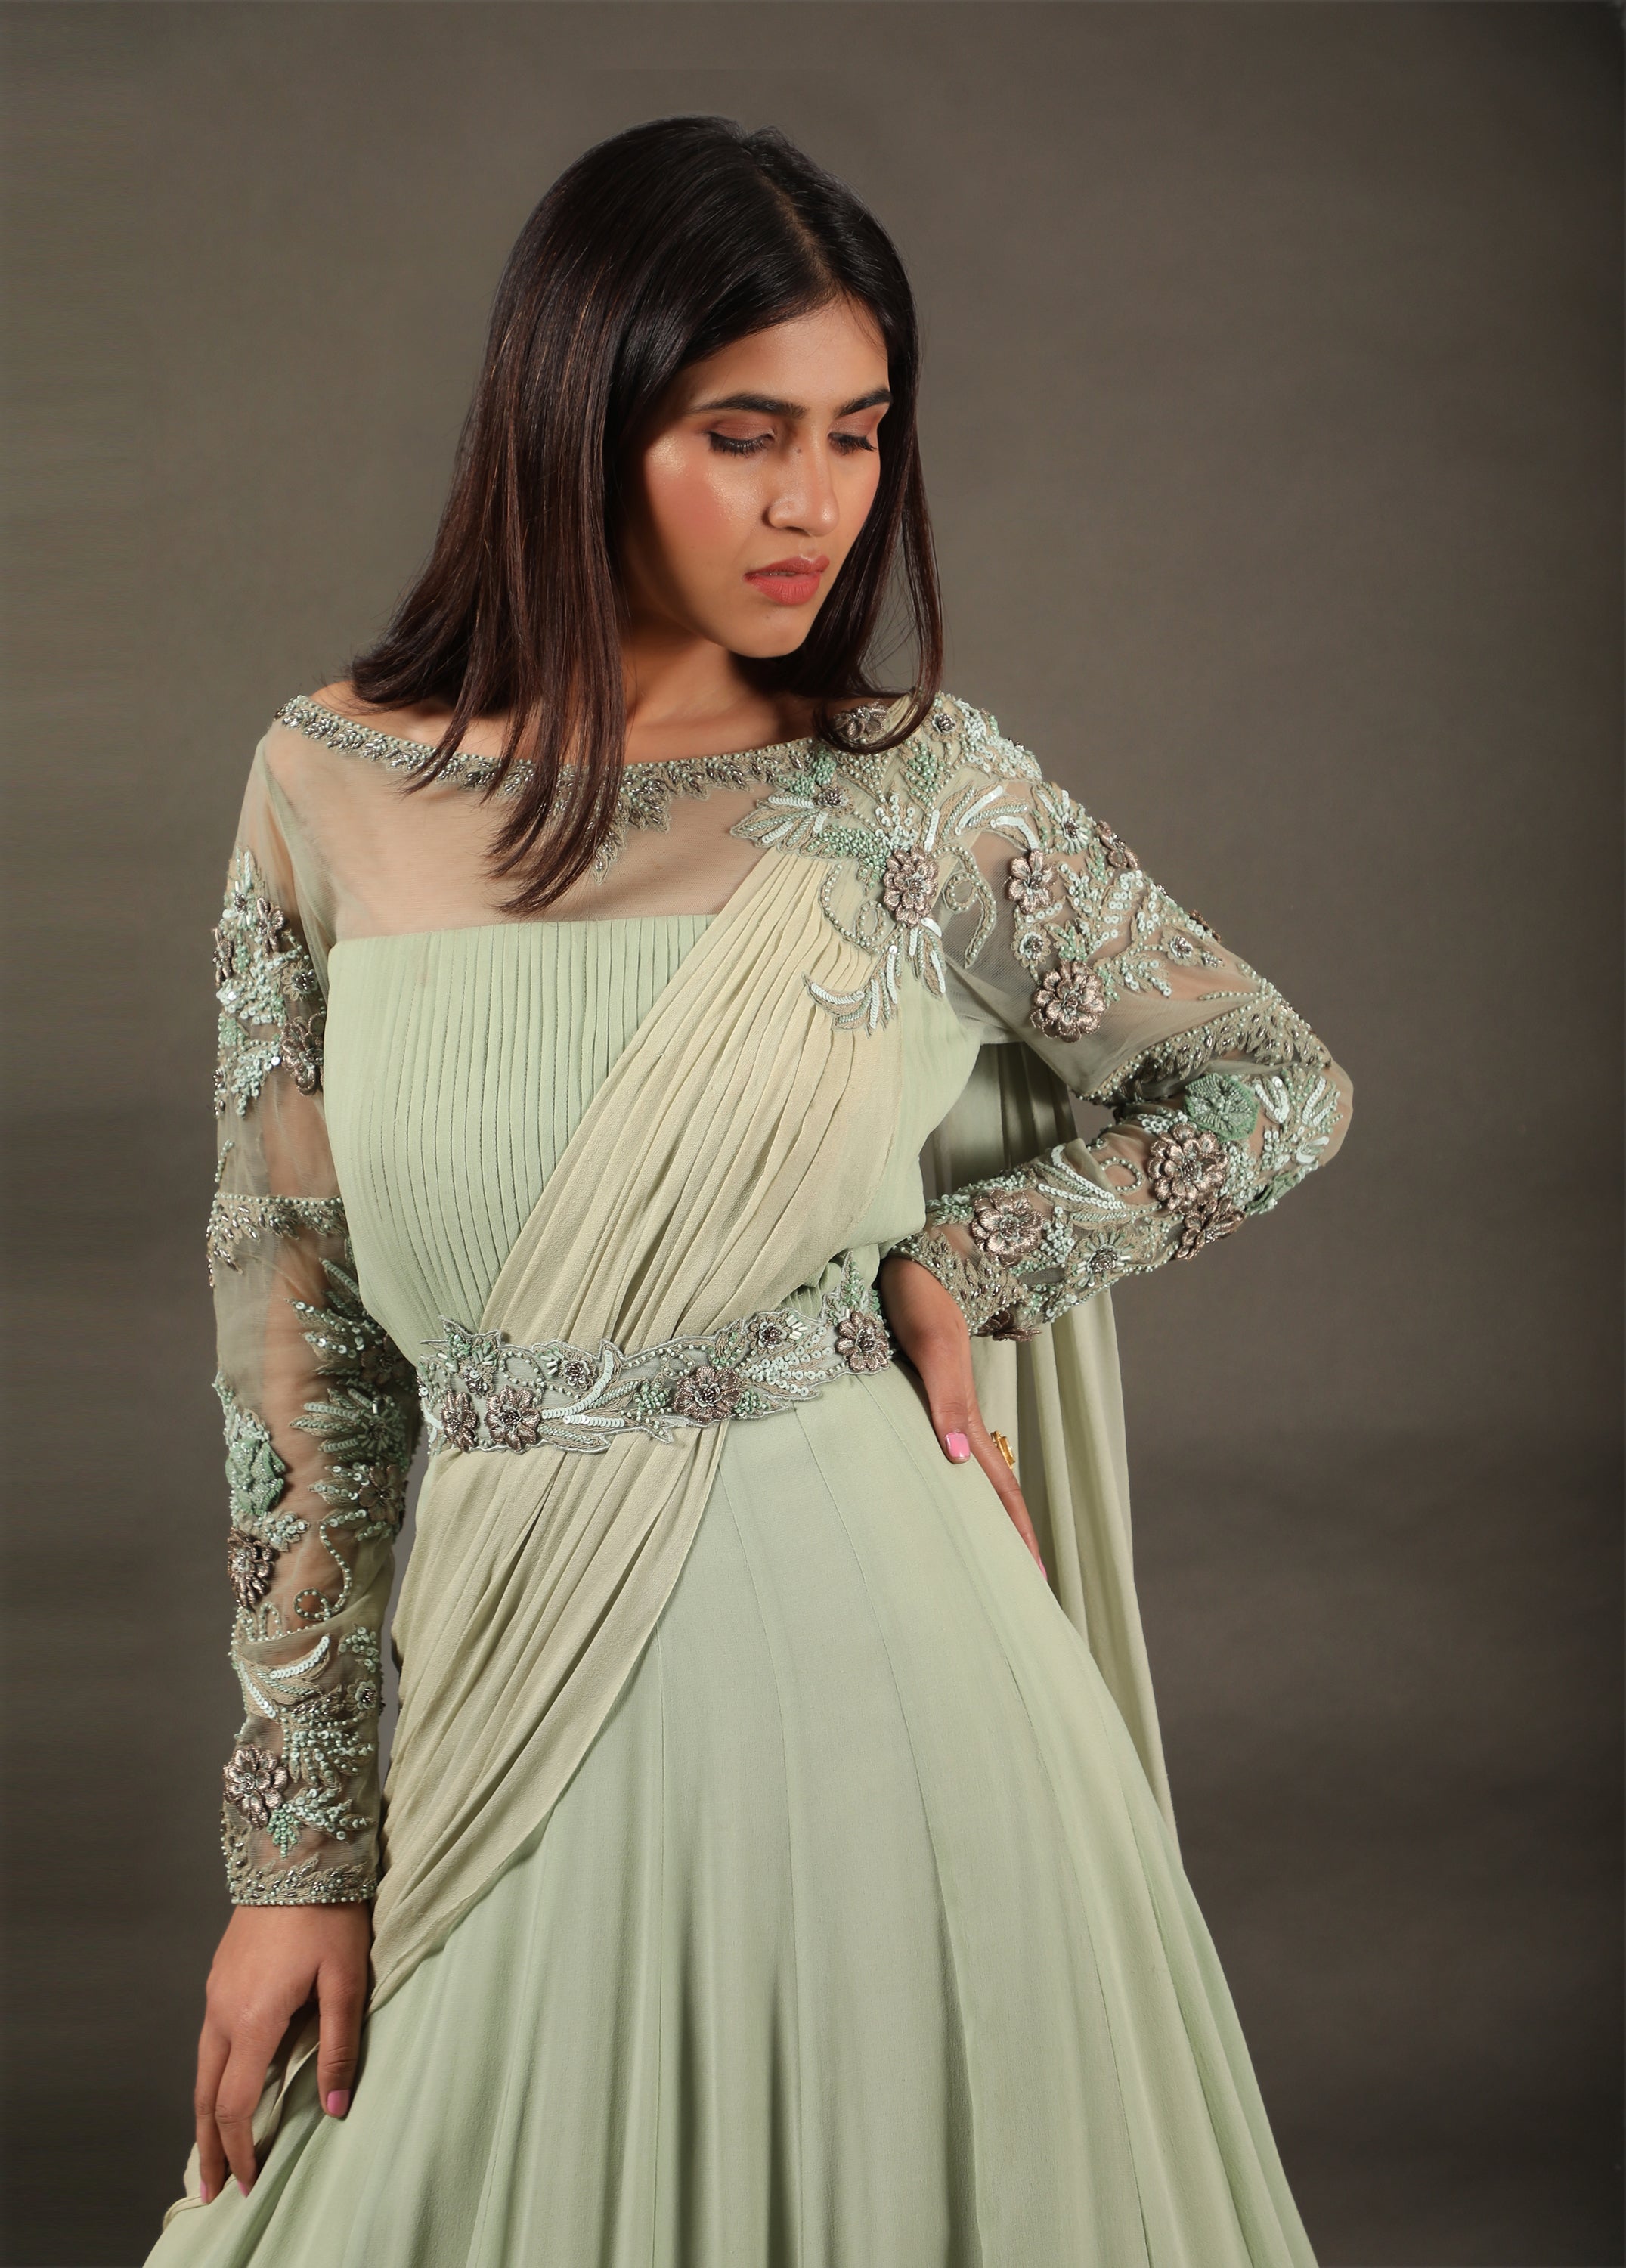 Anarkali dress cutting & stitching easily | | Convert saree into long gown/ frock/dress | Saree reuse - YouTube